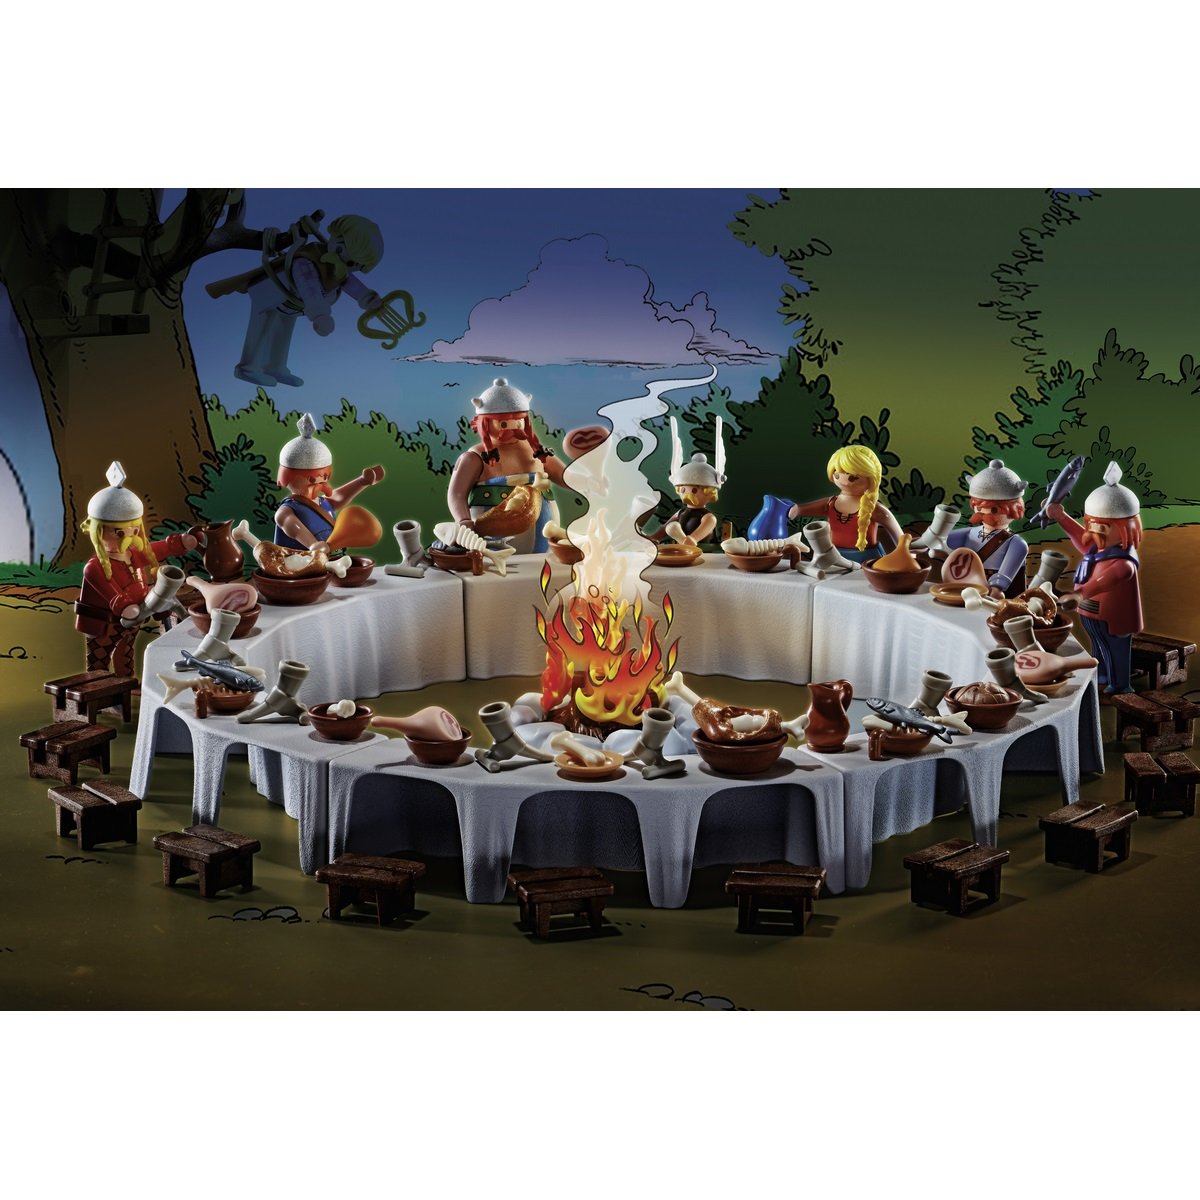 PLAYMOBIL 70931 Astérix : Le banquet du village - contient les célèbres  Gaulois Astérix, Obélix et le chien Idéfix - avec la hutte d'Astérix dont  le au meilleur prix